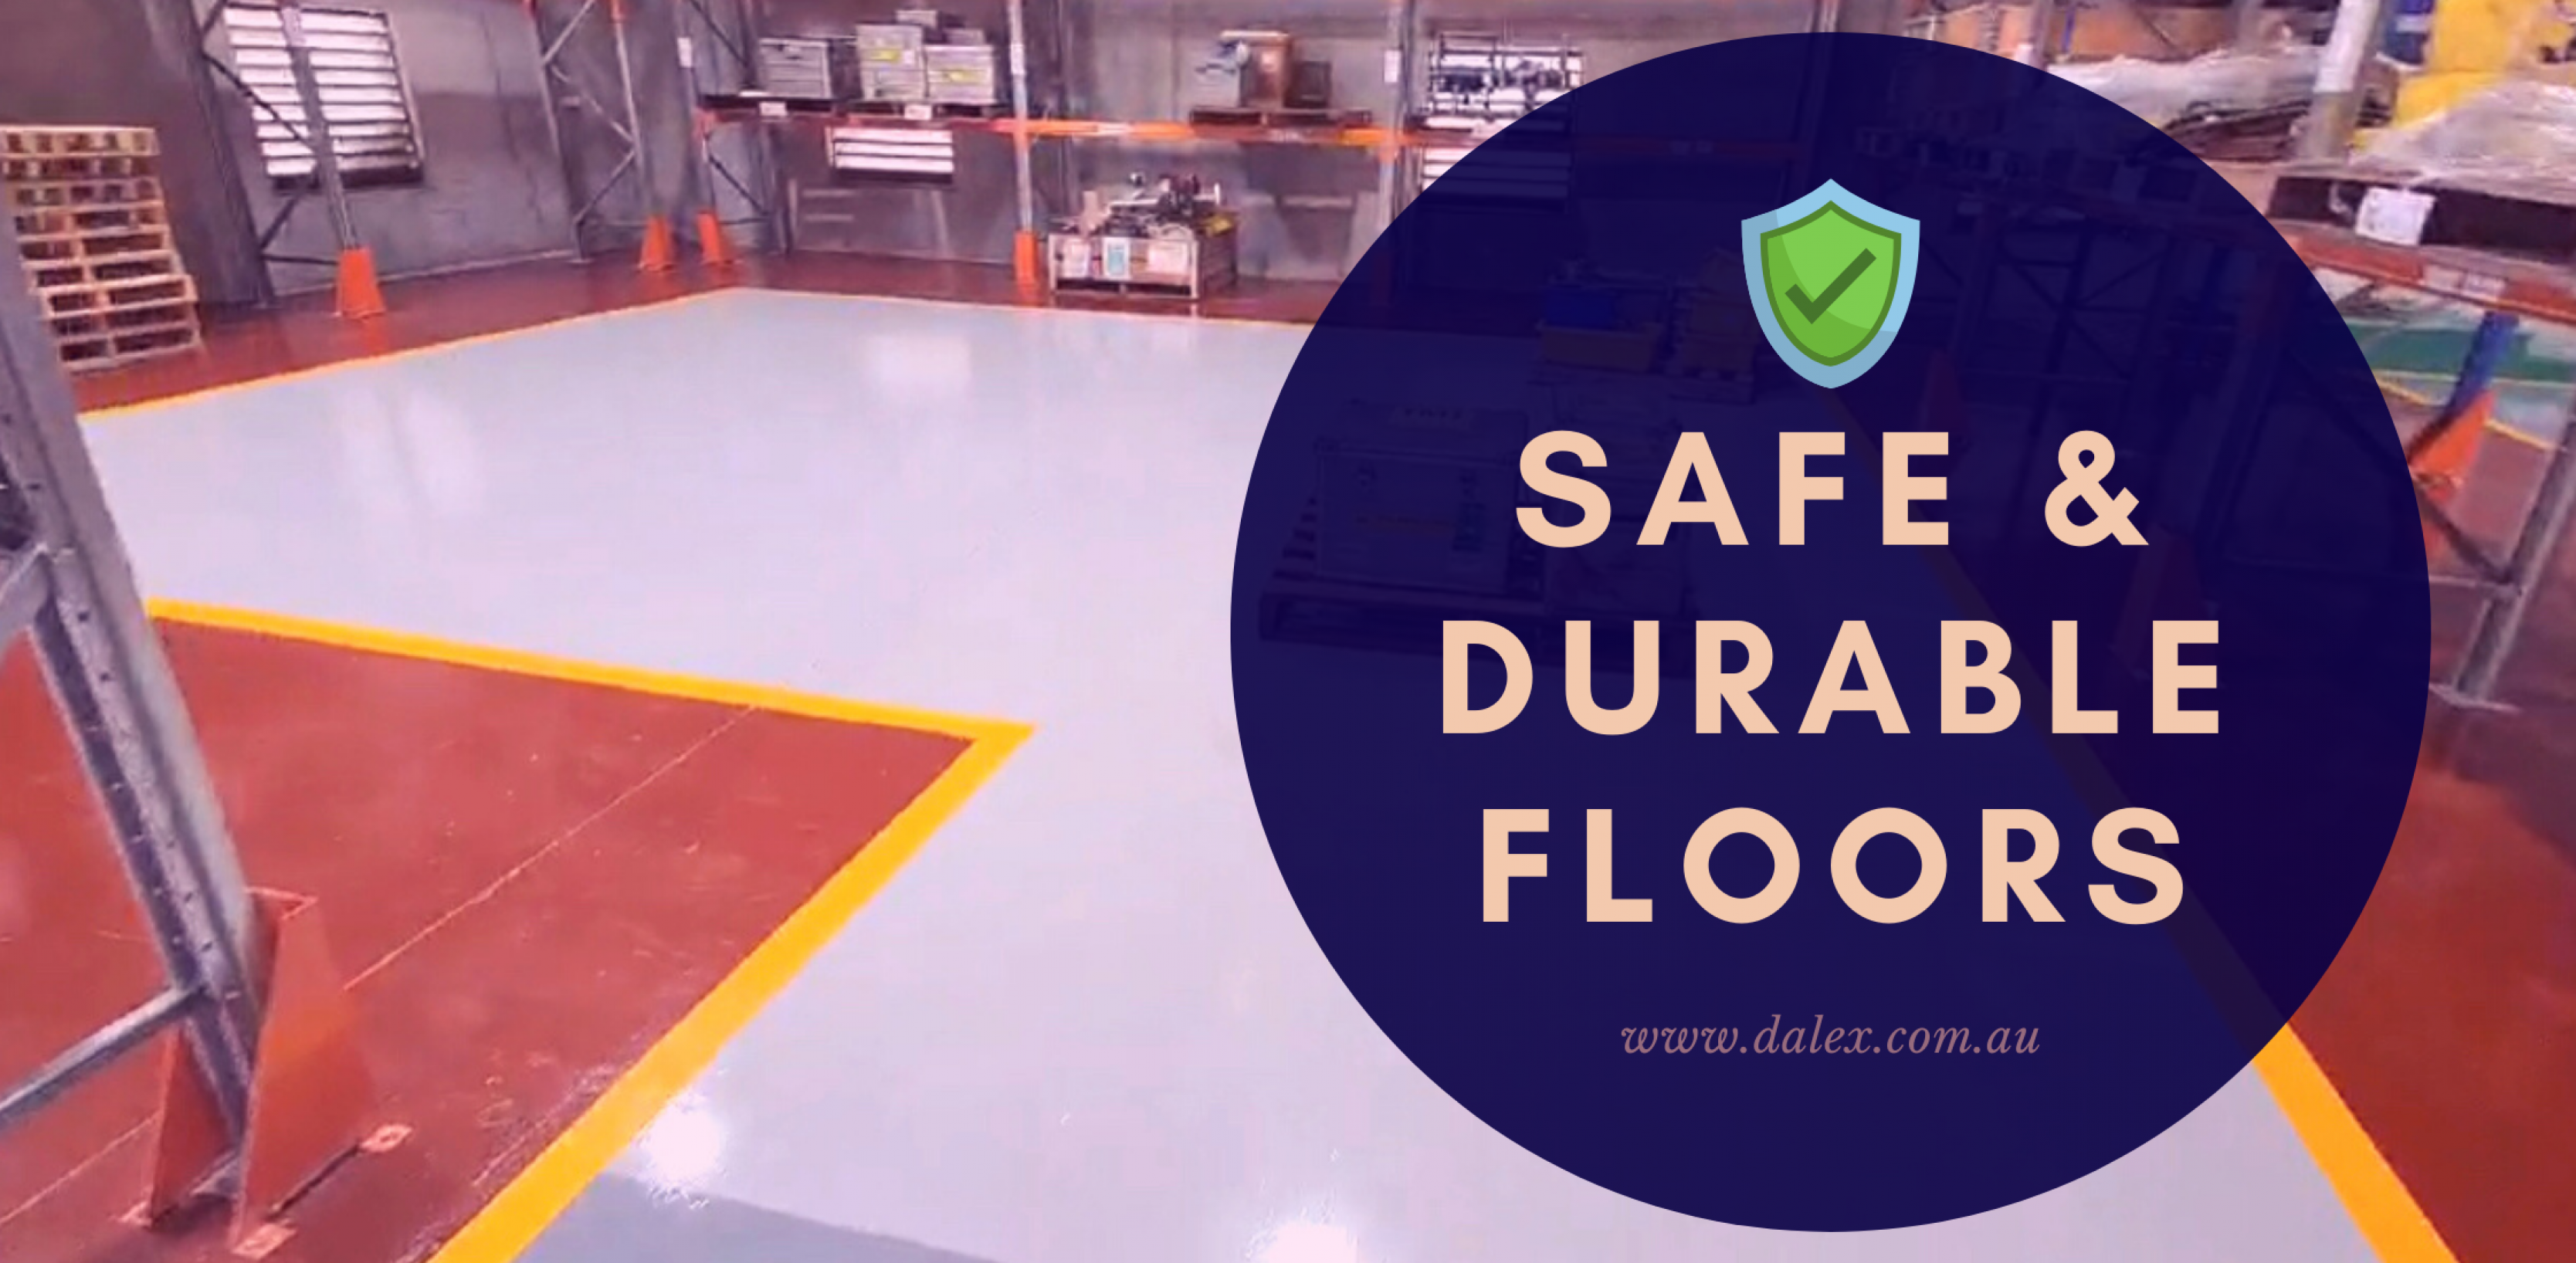 SAFE & DURABLE FLOORS